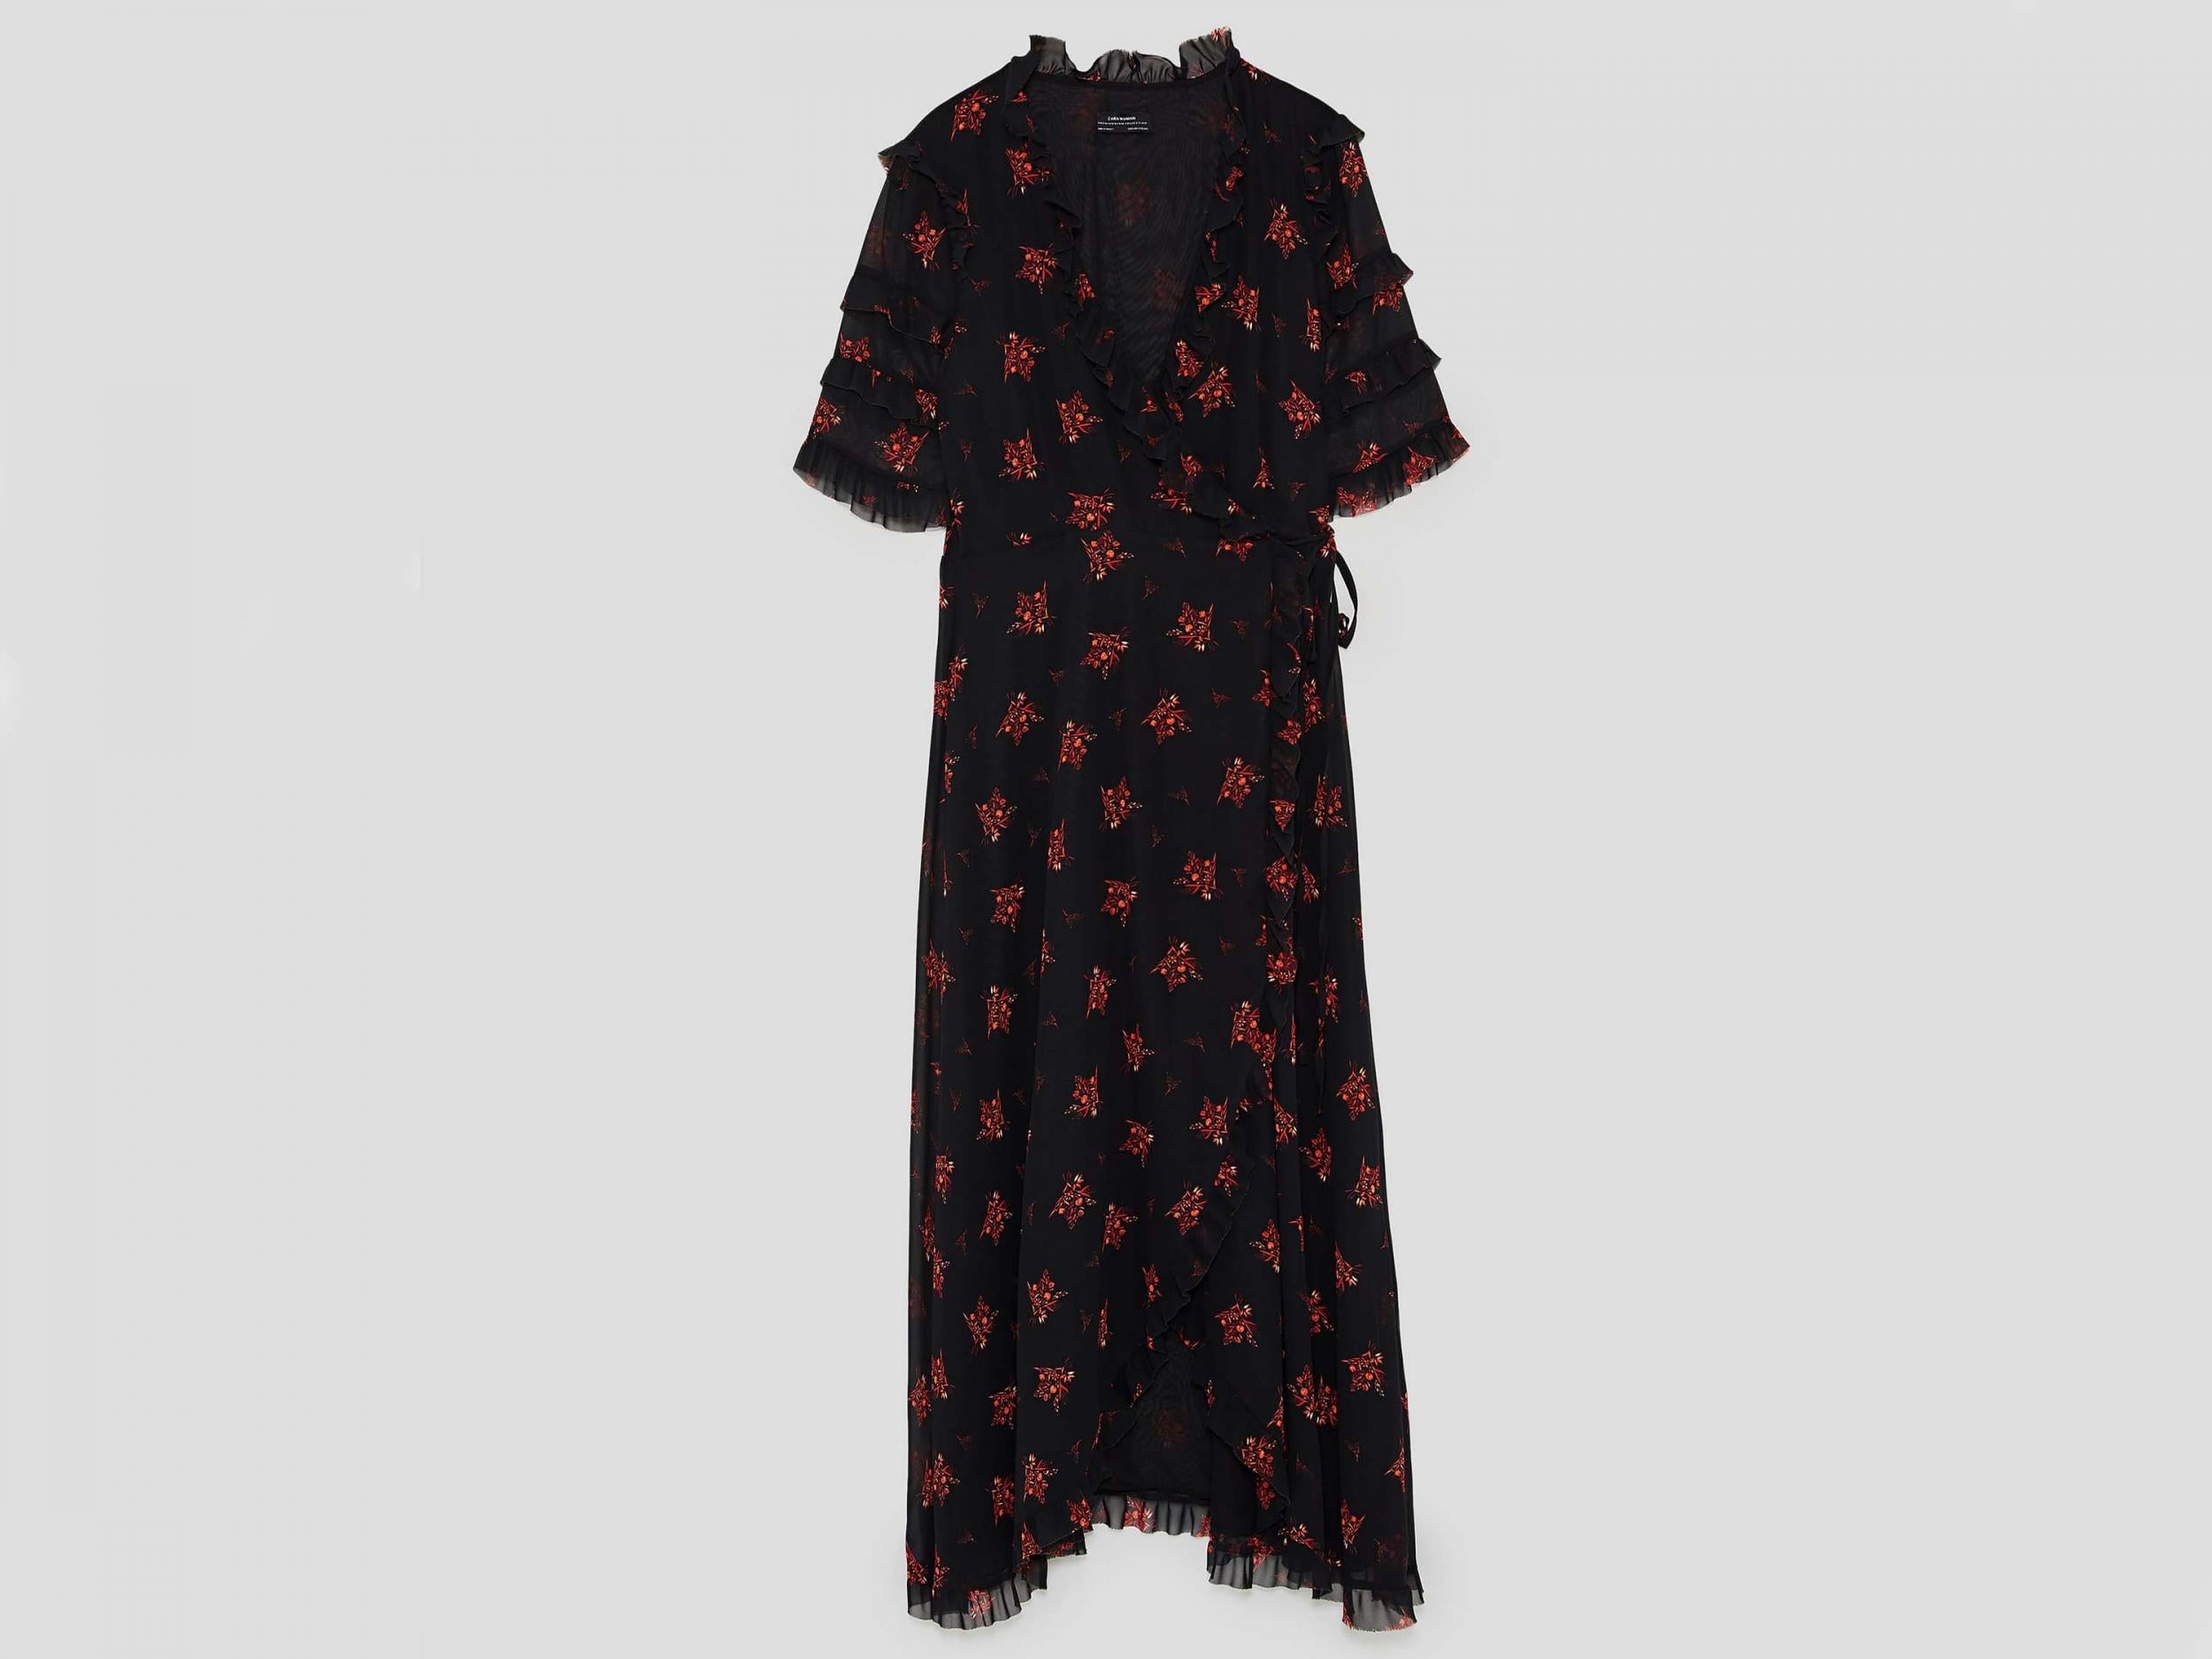 Long Crossover Dress, £39.99, Zara